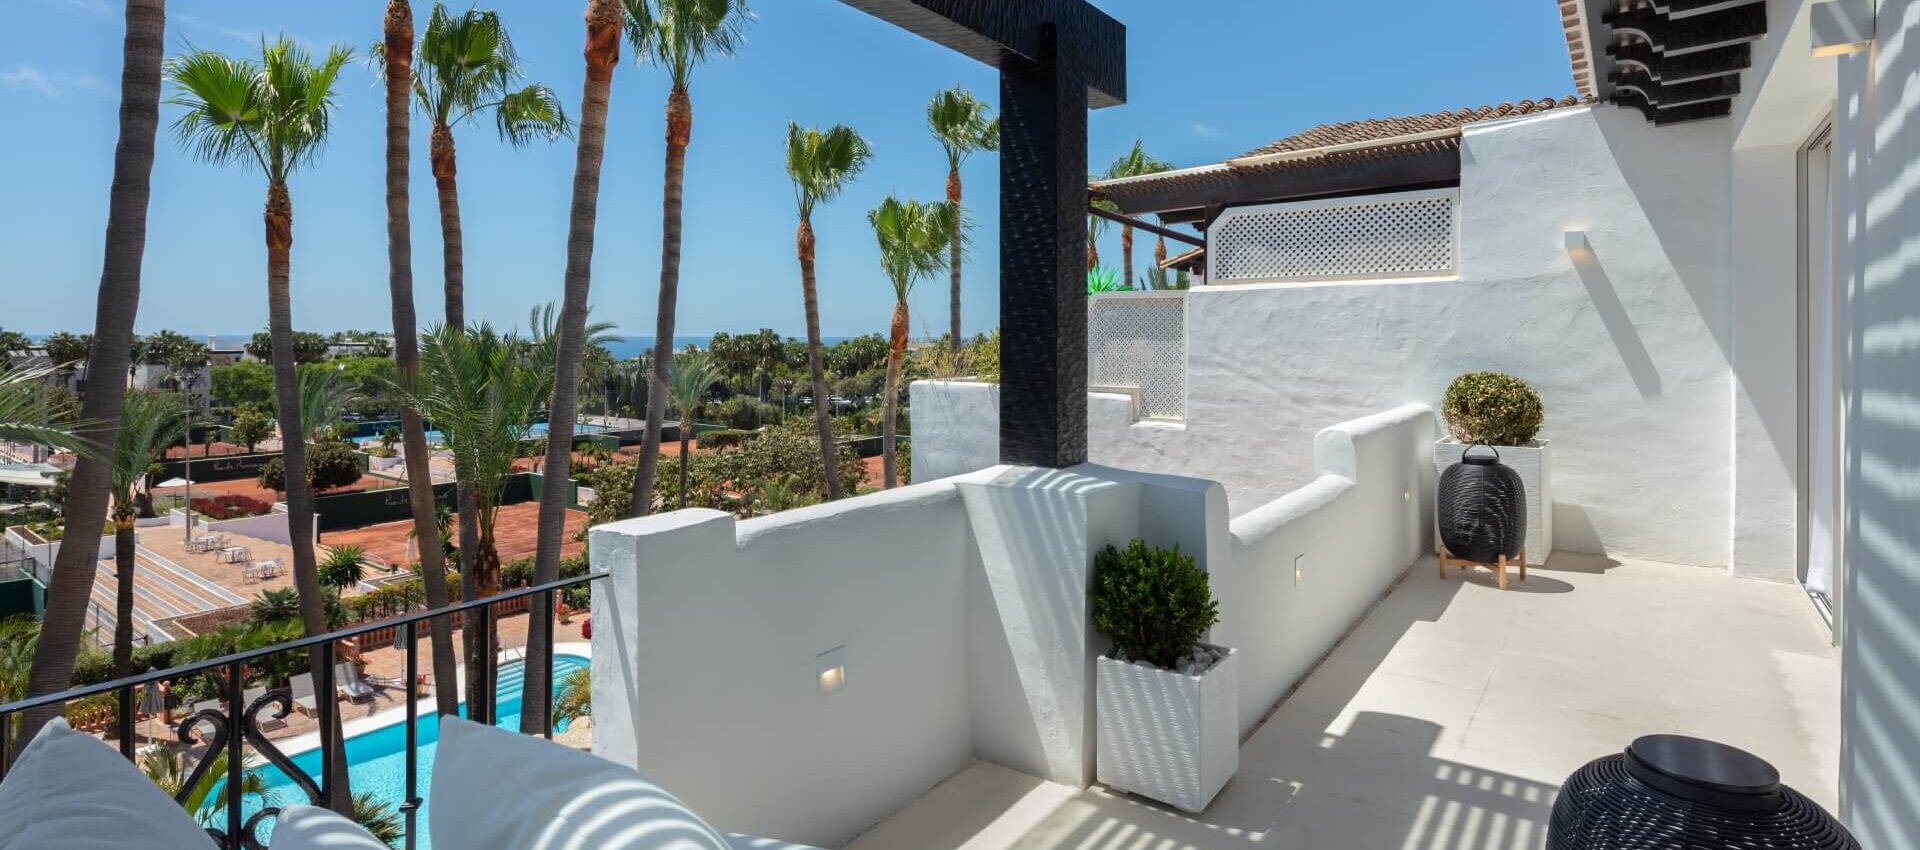 Duplex-Penthouse in der Goldenen Meile des Puente Romano Resort Marbella